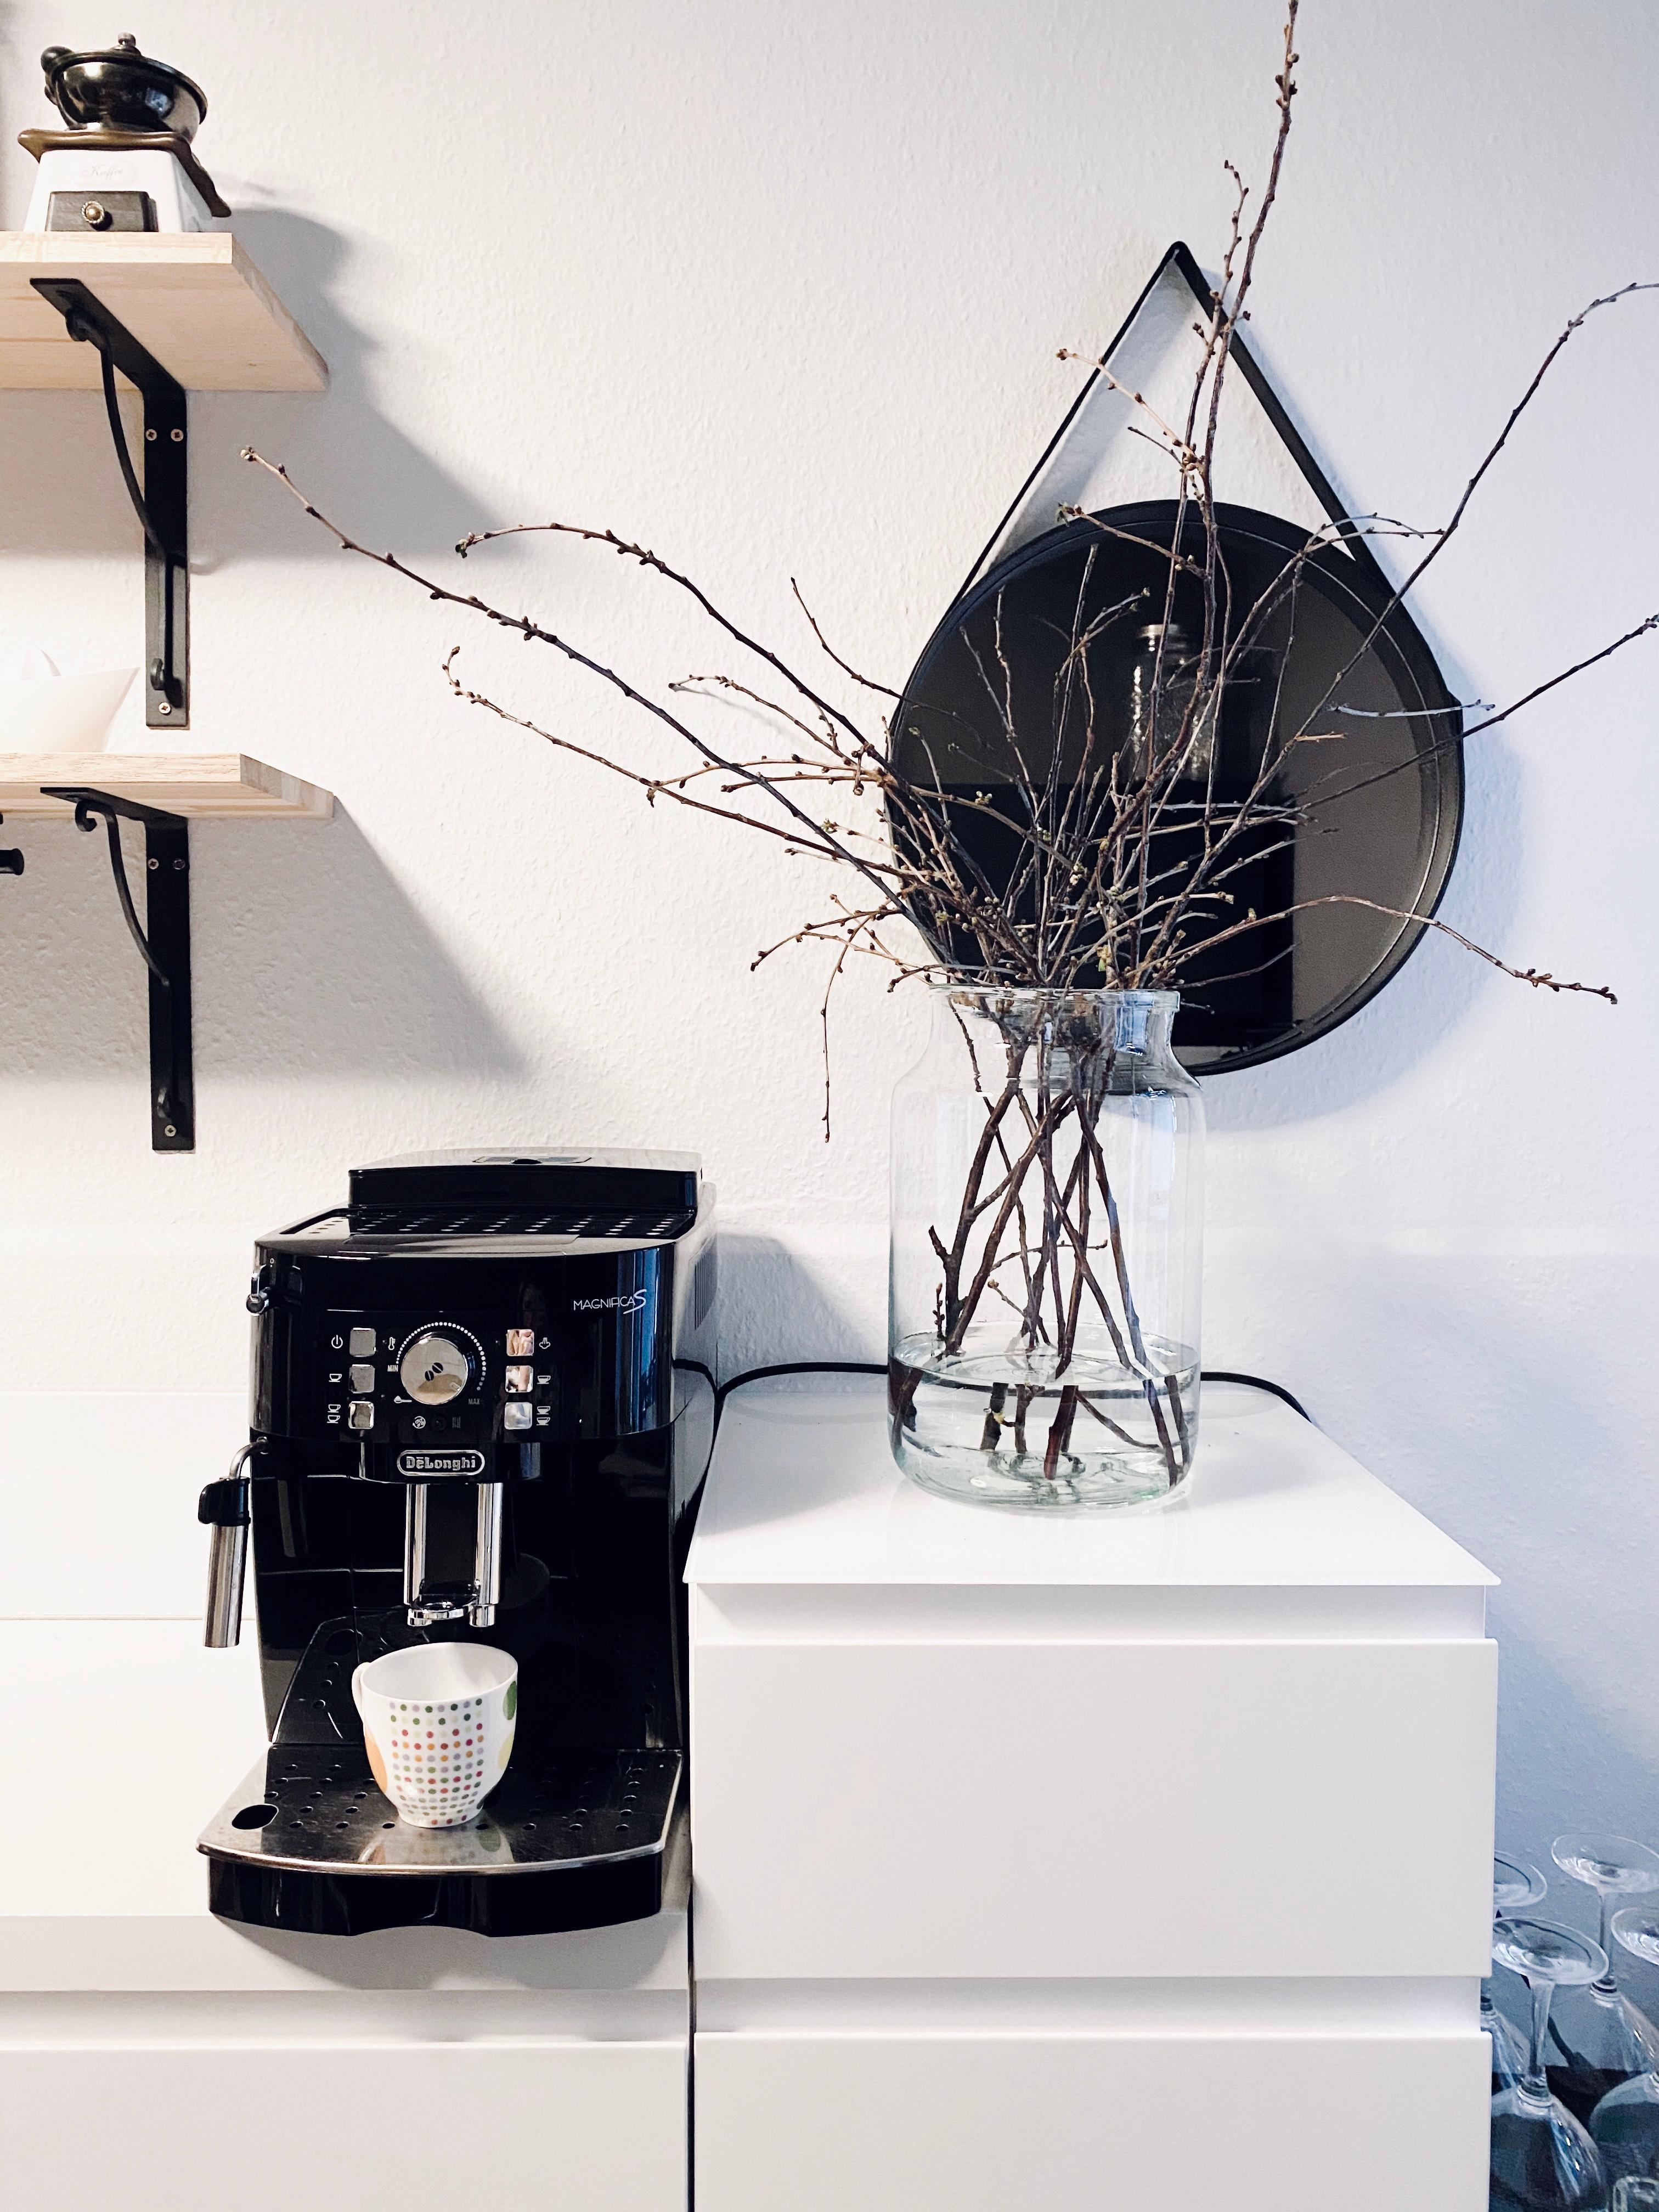 Wintermodus Vol.2
#kitchen #blackandwhite #monochrome #minimalism #mynordicroom #interior #scandinavianliving #vasen